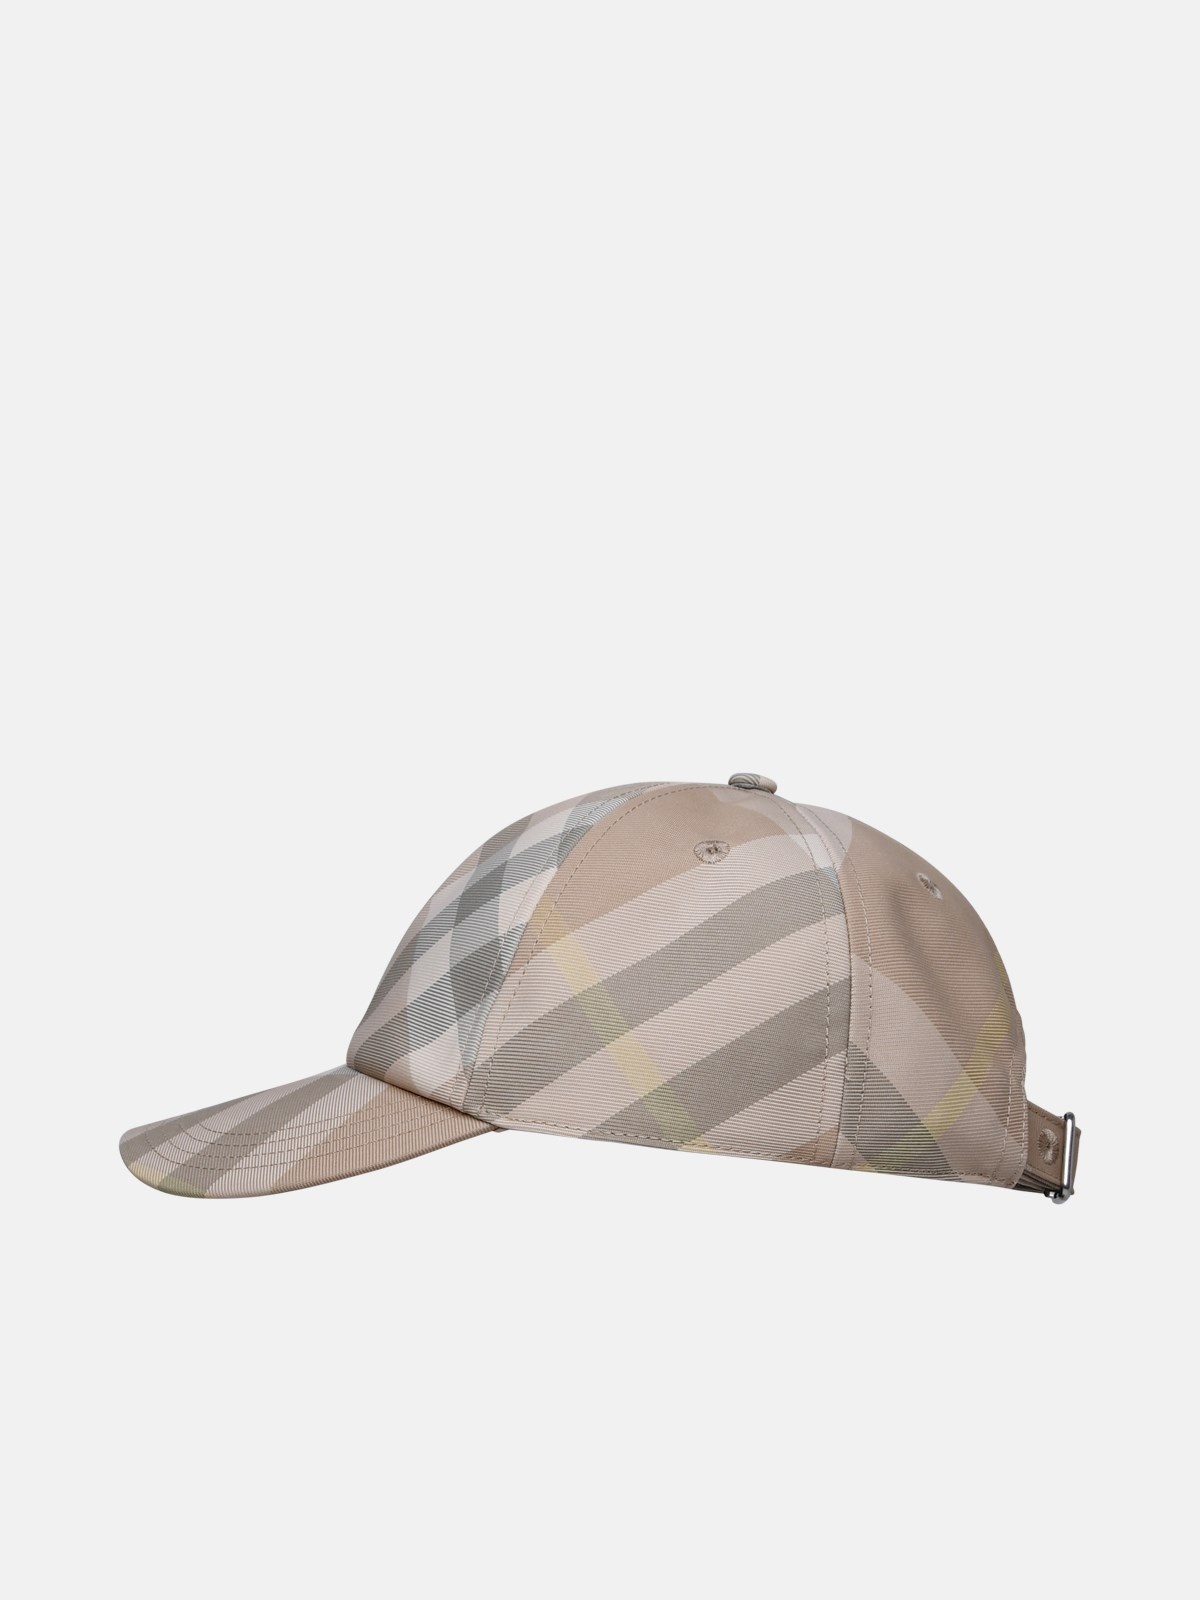 BEIGE POLYESTER HAT - 2